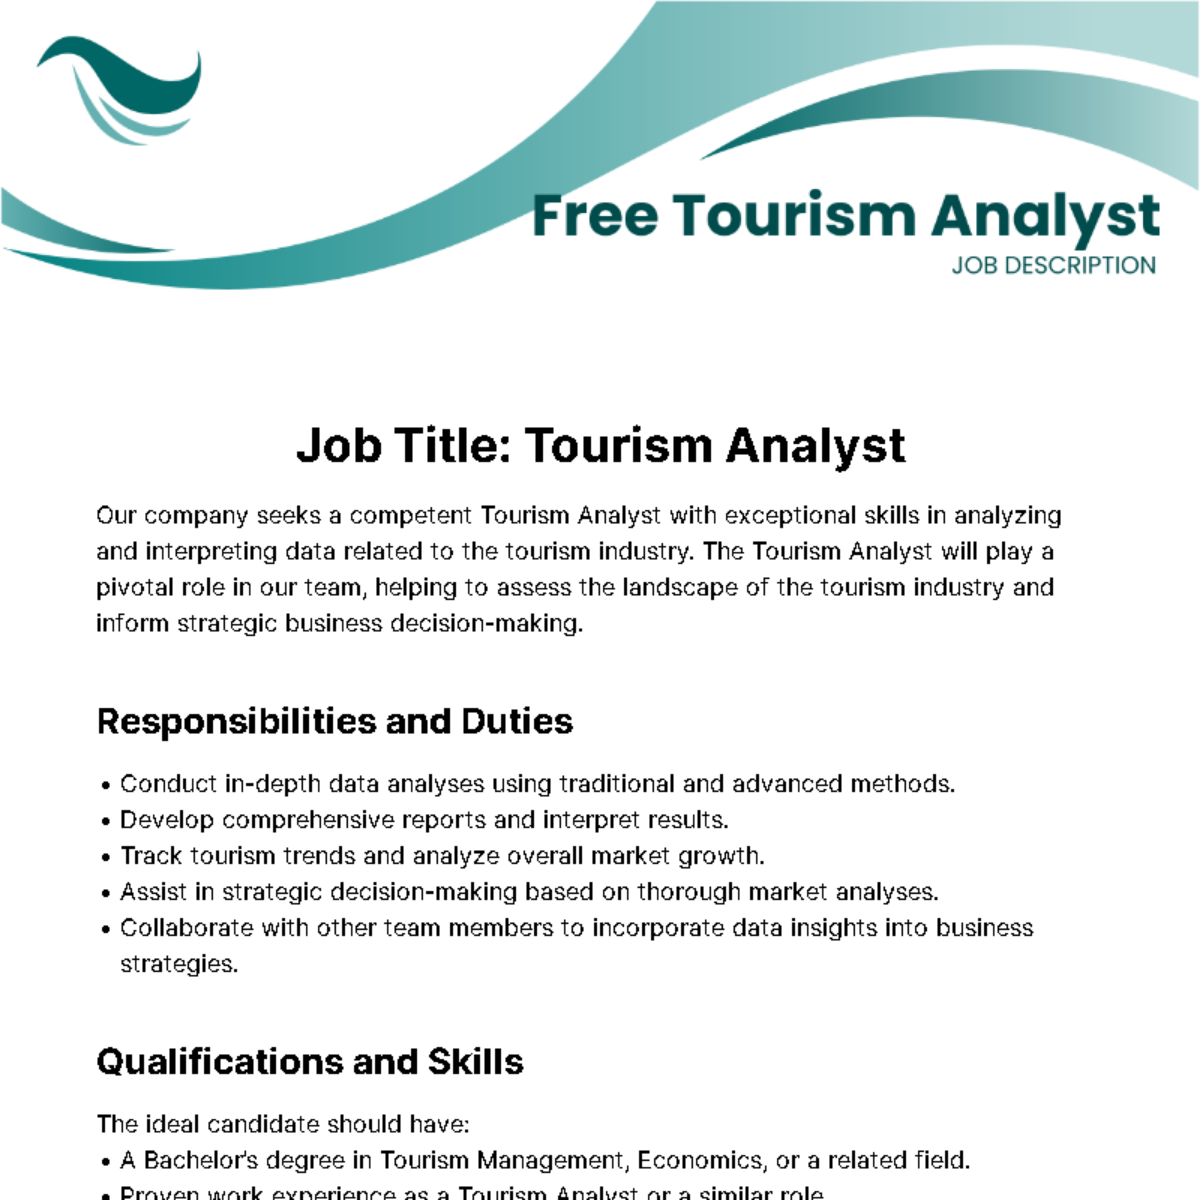 Free Tourism Analyst Job Description Template